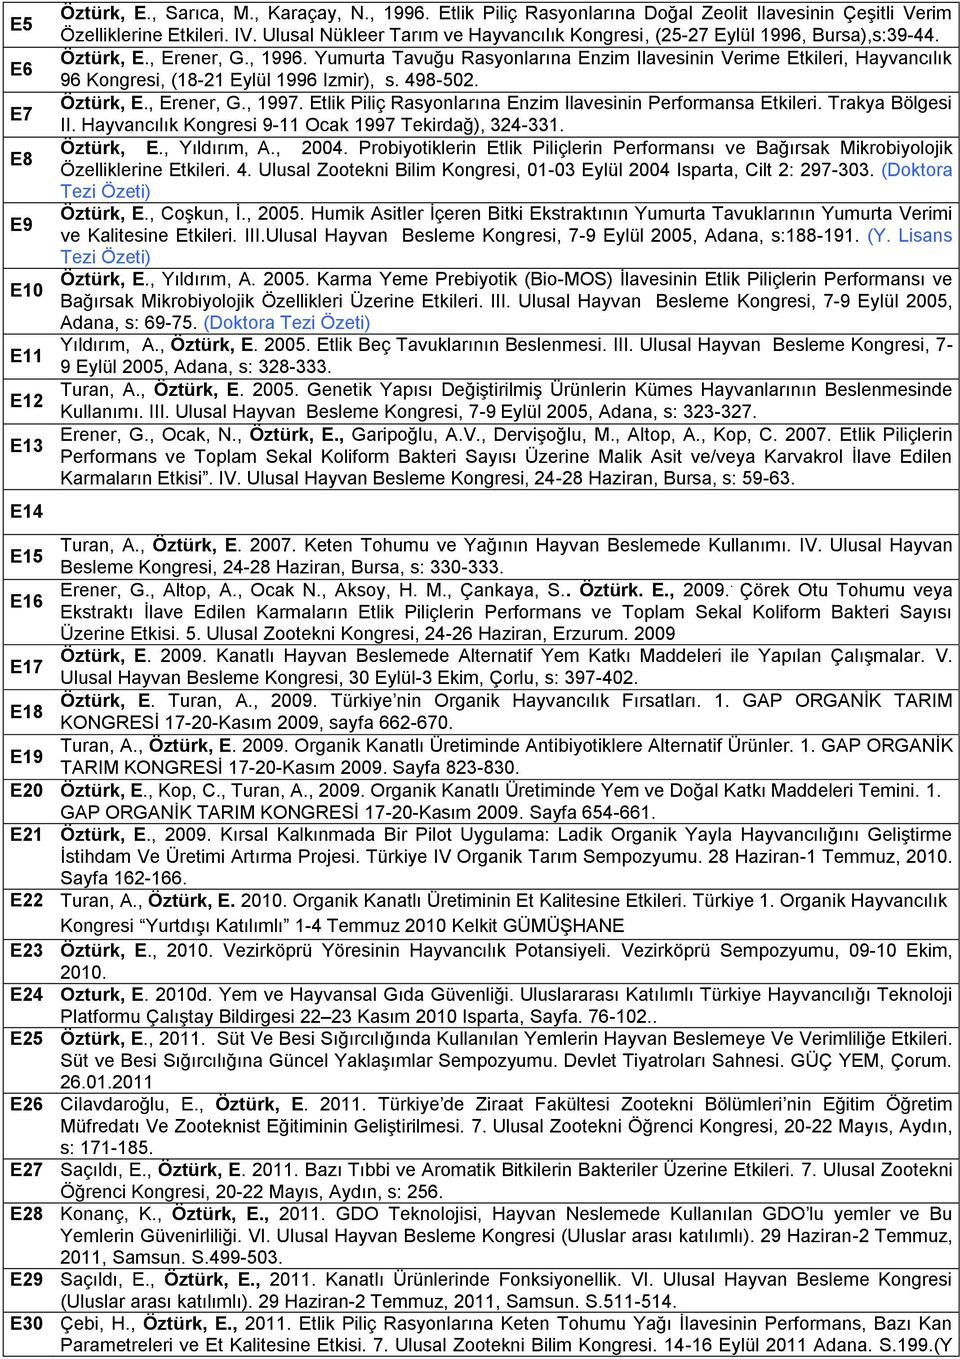 Yumurta Tavuğu Rasyonlarına Enzim Ilavesinin Verime Etkileri, Hayvancılık 96 Kongresi, (18-21 Eylül 1996 Izmir), s. 498-502. Öztürk, E., Erener, G., 1997.